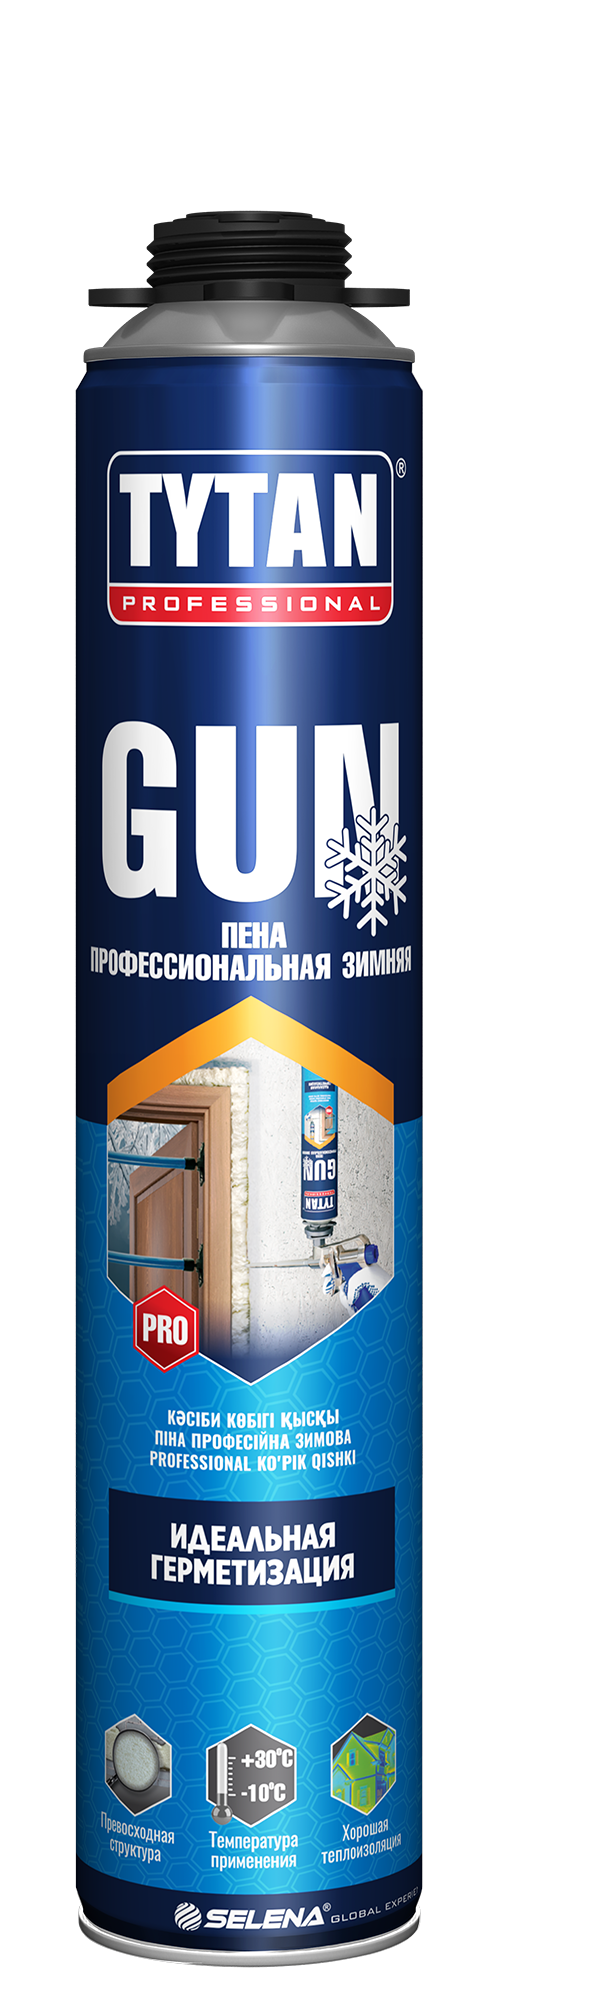 TYTAN Professional GUN пена профессиональная зимняя 750 мл (12 шт.)